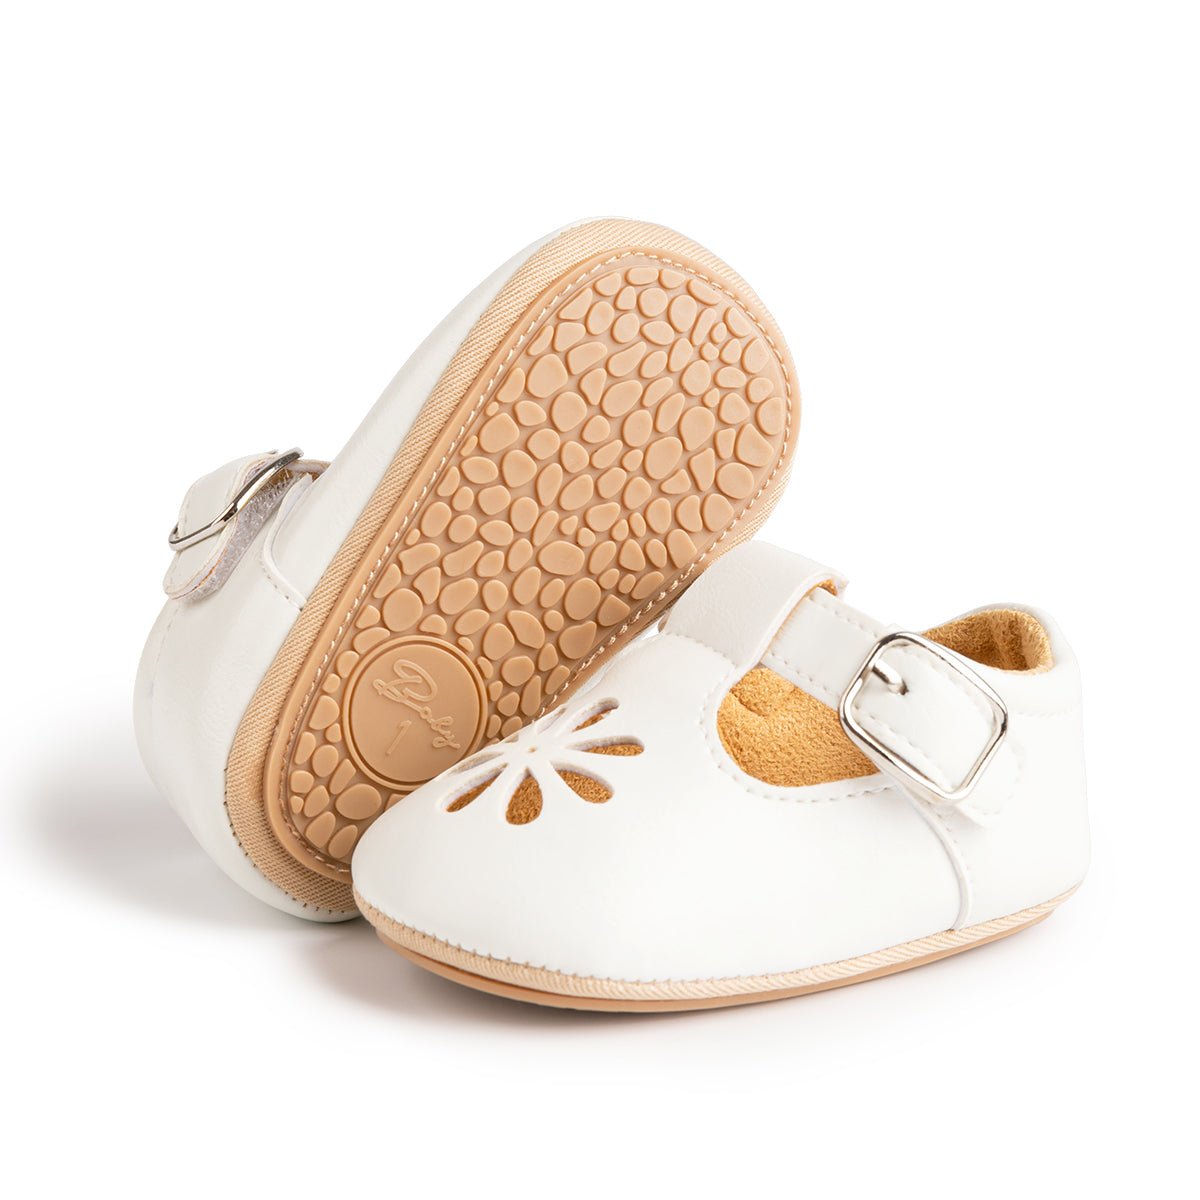 #SALE Sapato de Bebê #meninas Tam: 0-18 meses Antiderrapante com Frete Grátis para todo Brasil | por Apenas R$ 59.90! Compre Agora em Mãe Compra De Mãe